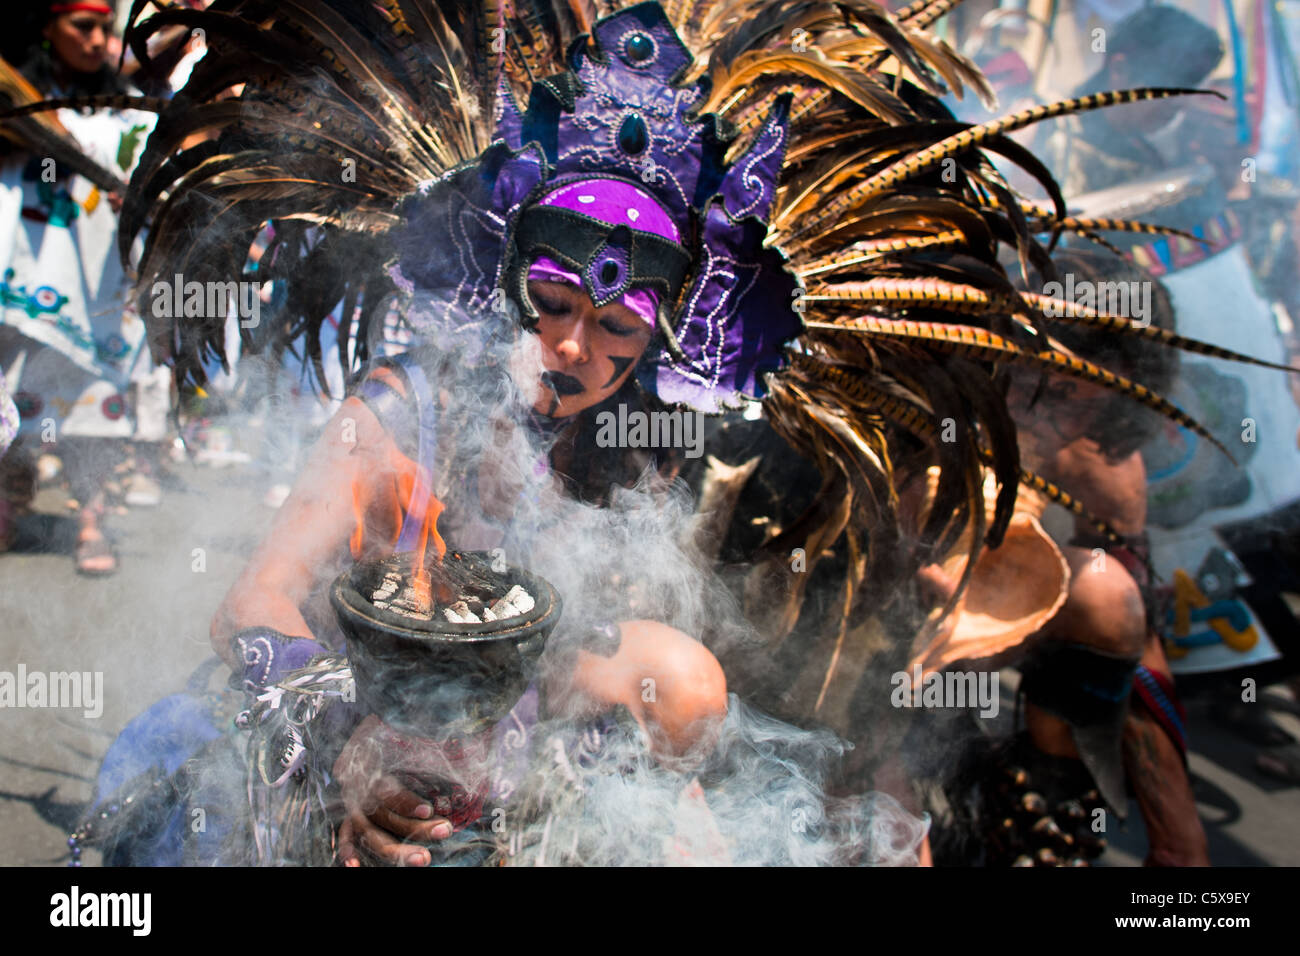 Un danseur effectue une danse culte mort aztèque au cours d'une cérémonie à santa muerte (sainte mort) dans la ville de Mexico. Banque D'Images